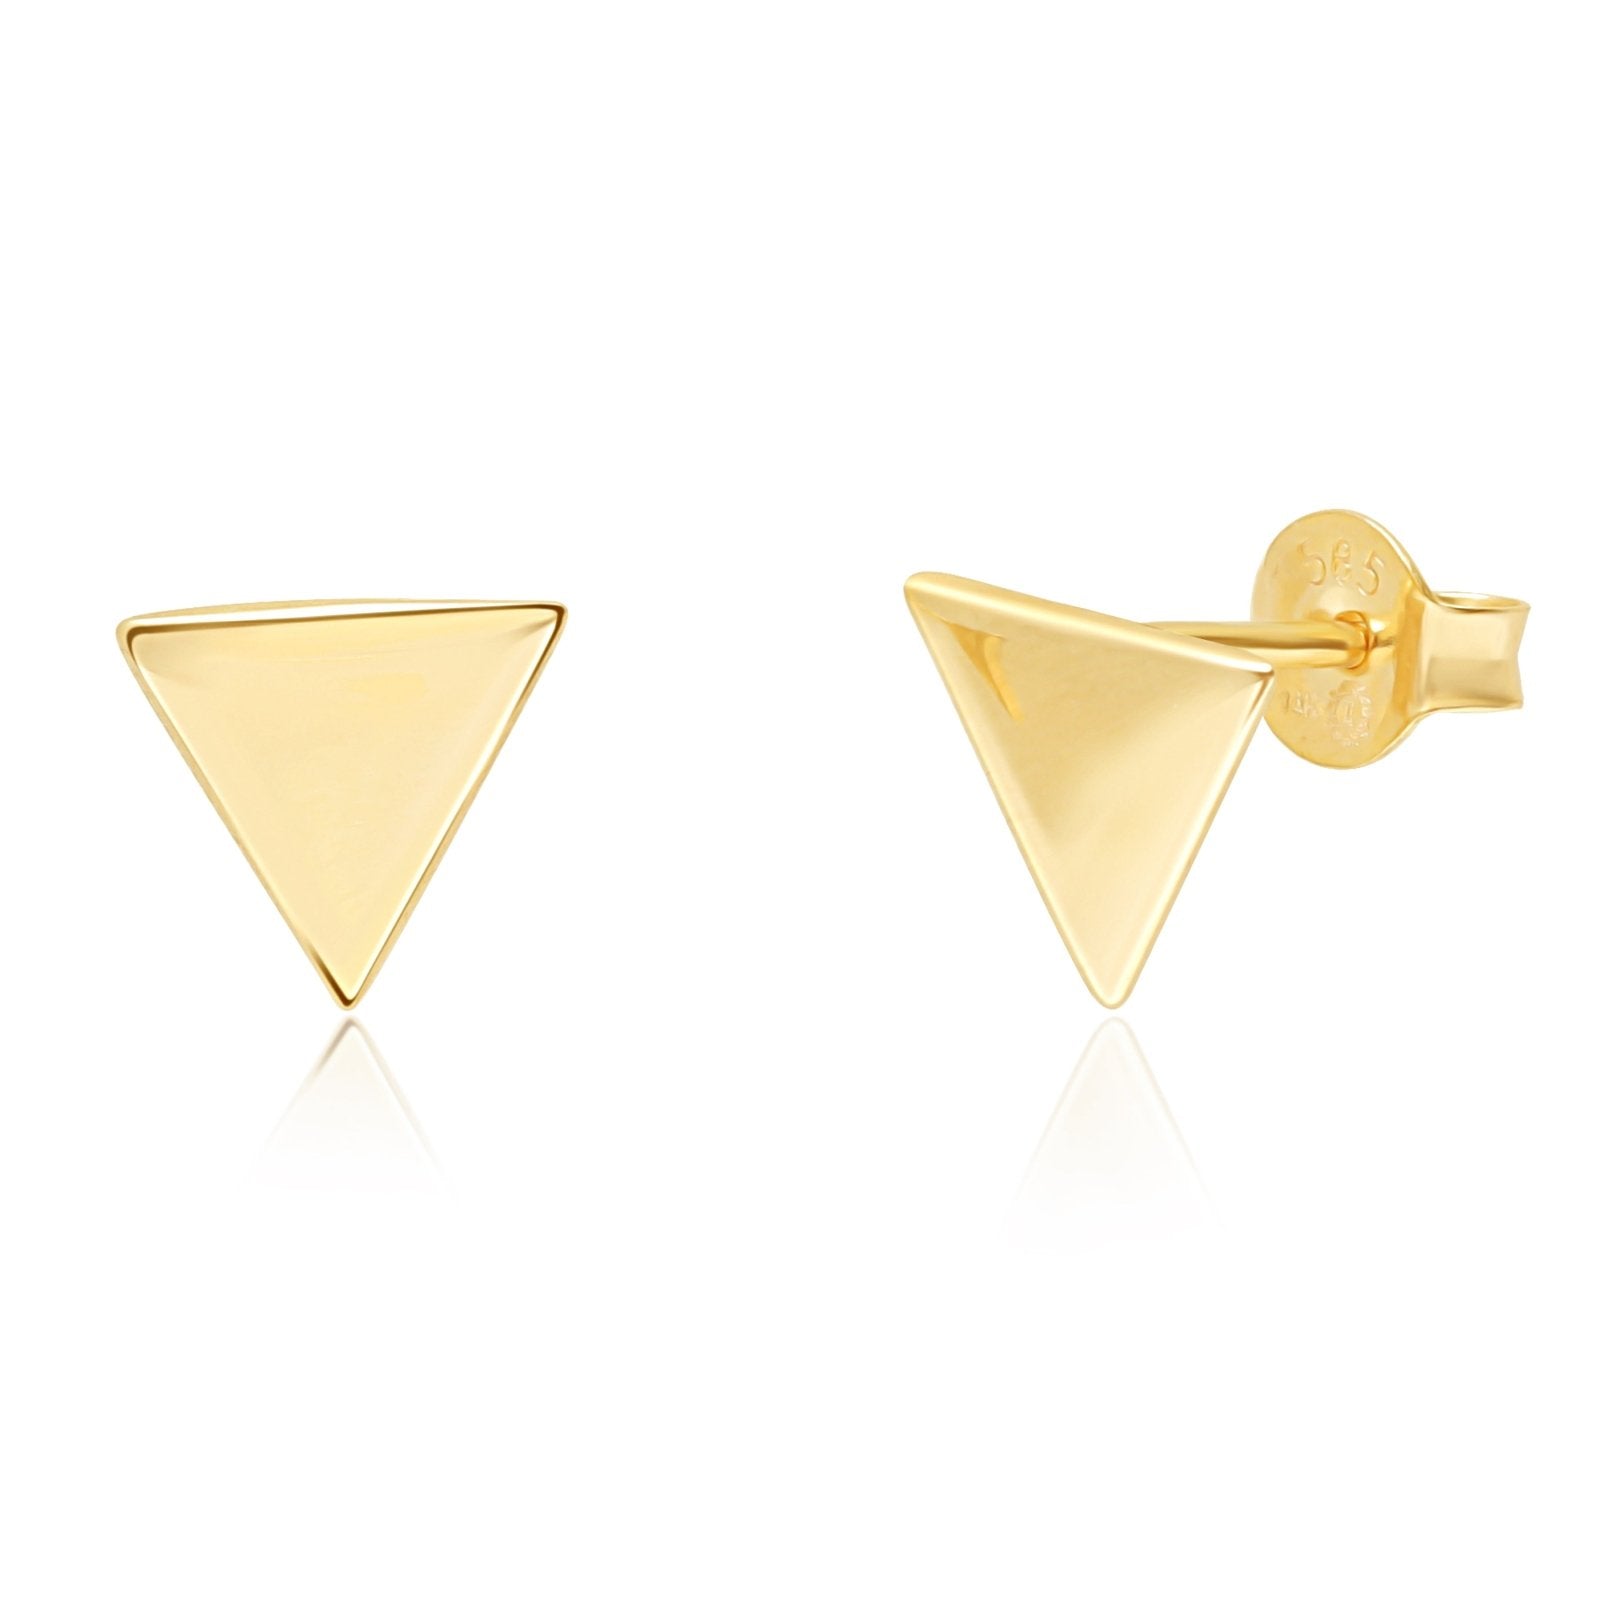 Minimalist Triangle Screw Back Earrings Earrings Estella Collection #product_description# 14k Earrings Everyday Earrings #tag4# #tag5# #tag6# #tag7# #tag8# #tag9# #tag10#